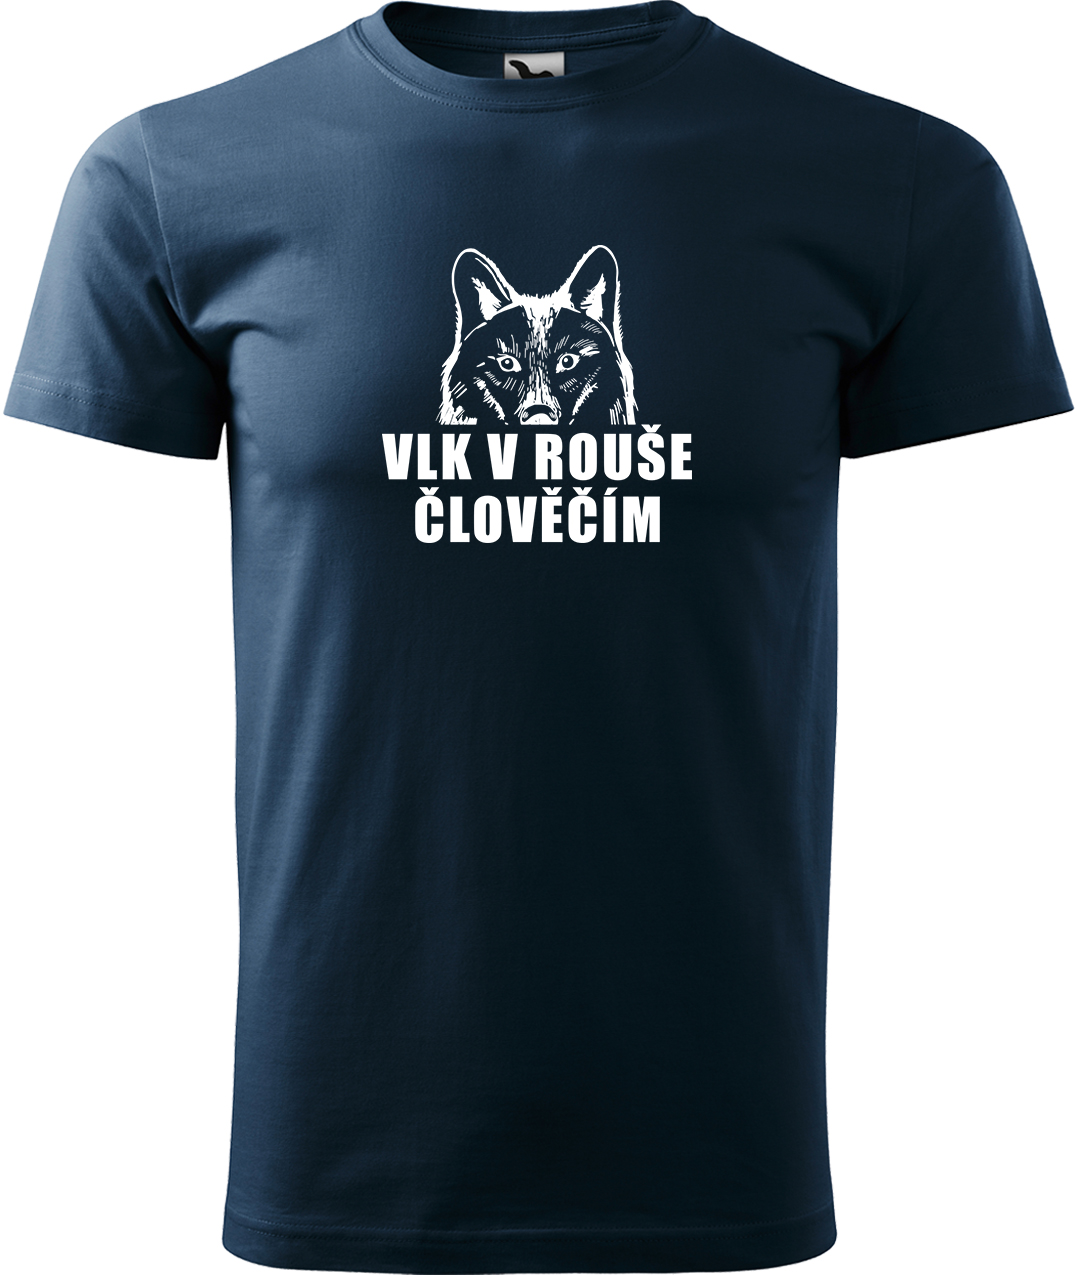 Pánské tričko s vlkem - Vlk v rouše člověčím Velikost: XL, Barva: Námořní modrá (02), Střih: pánský